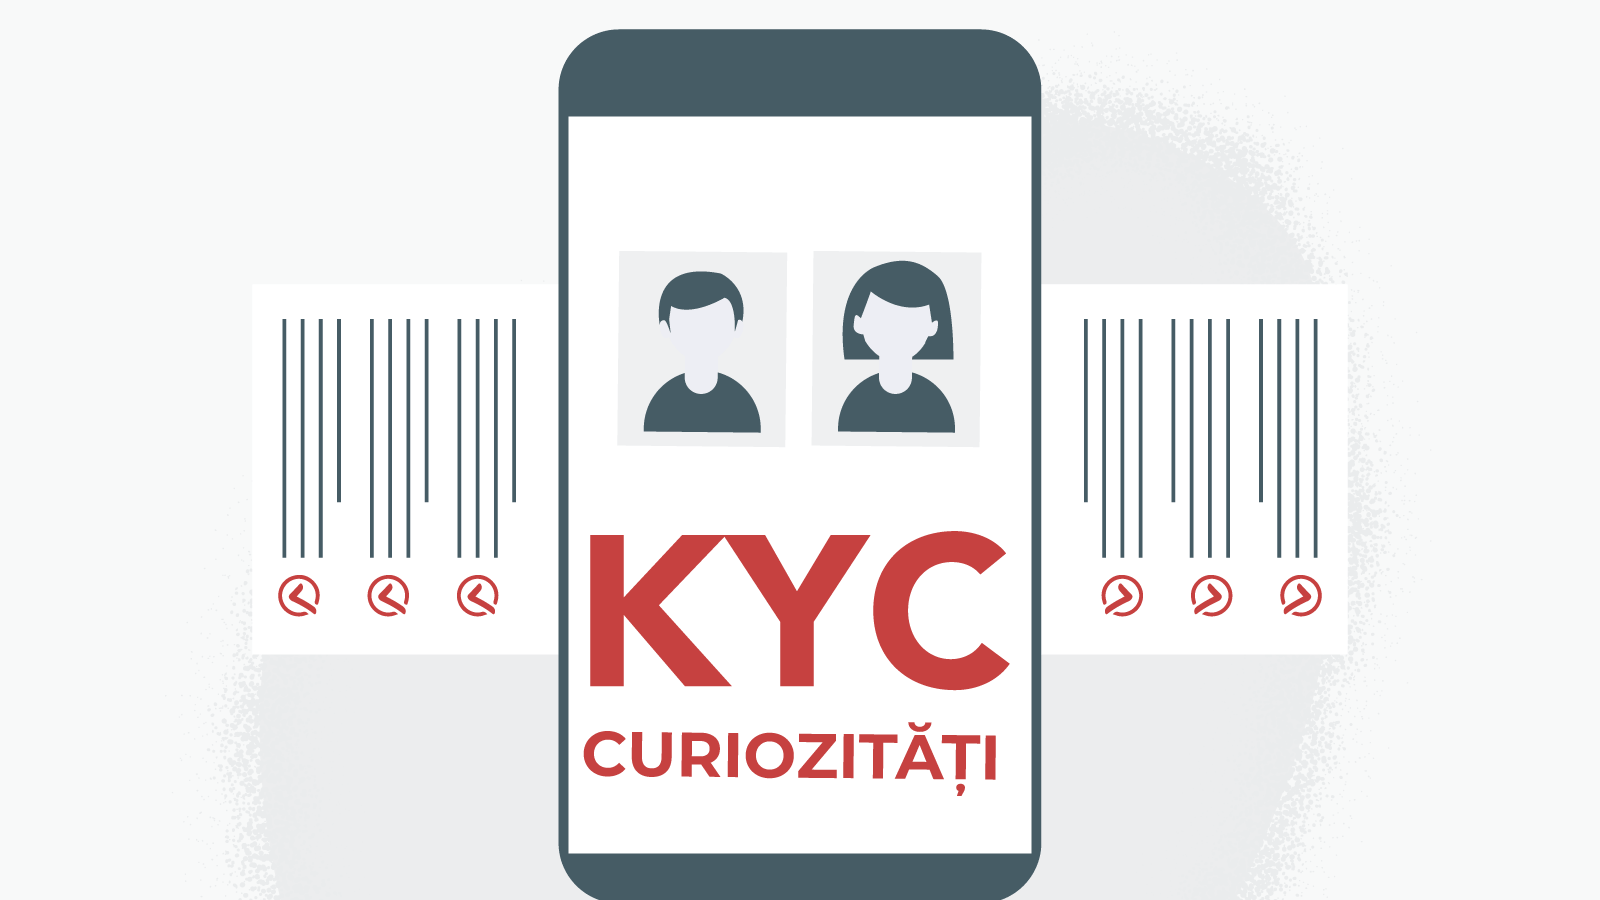 Alte curiozități despre verificarea KYC